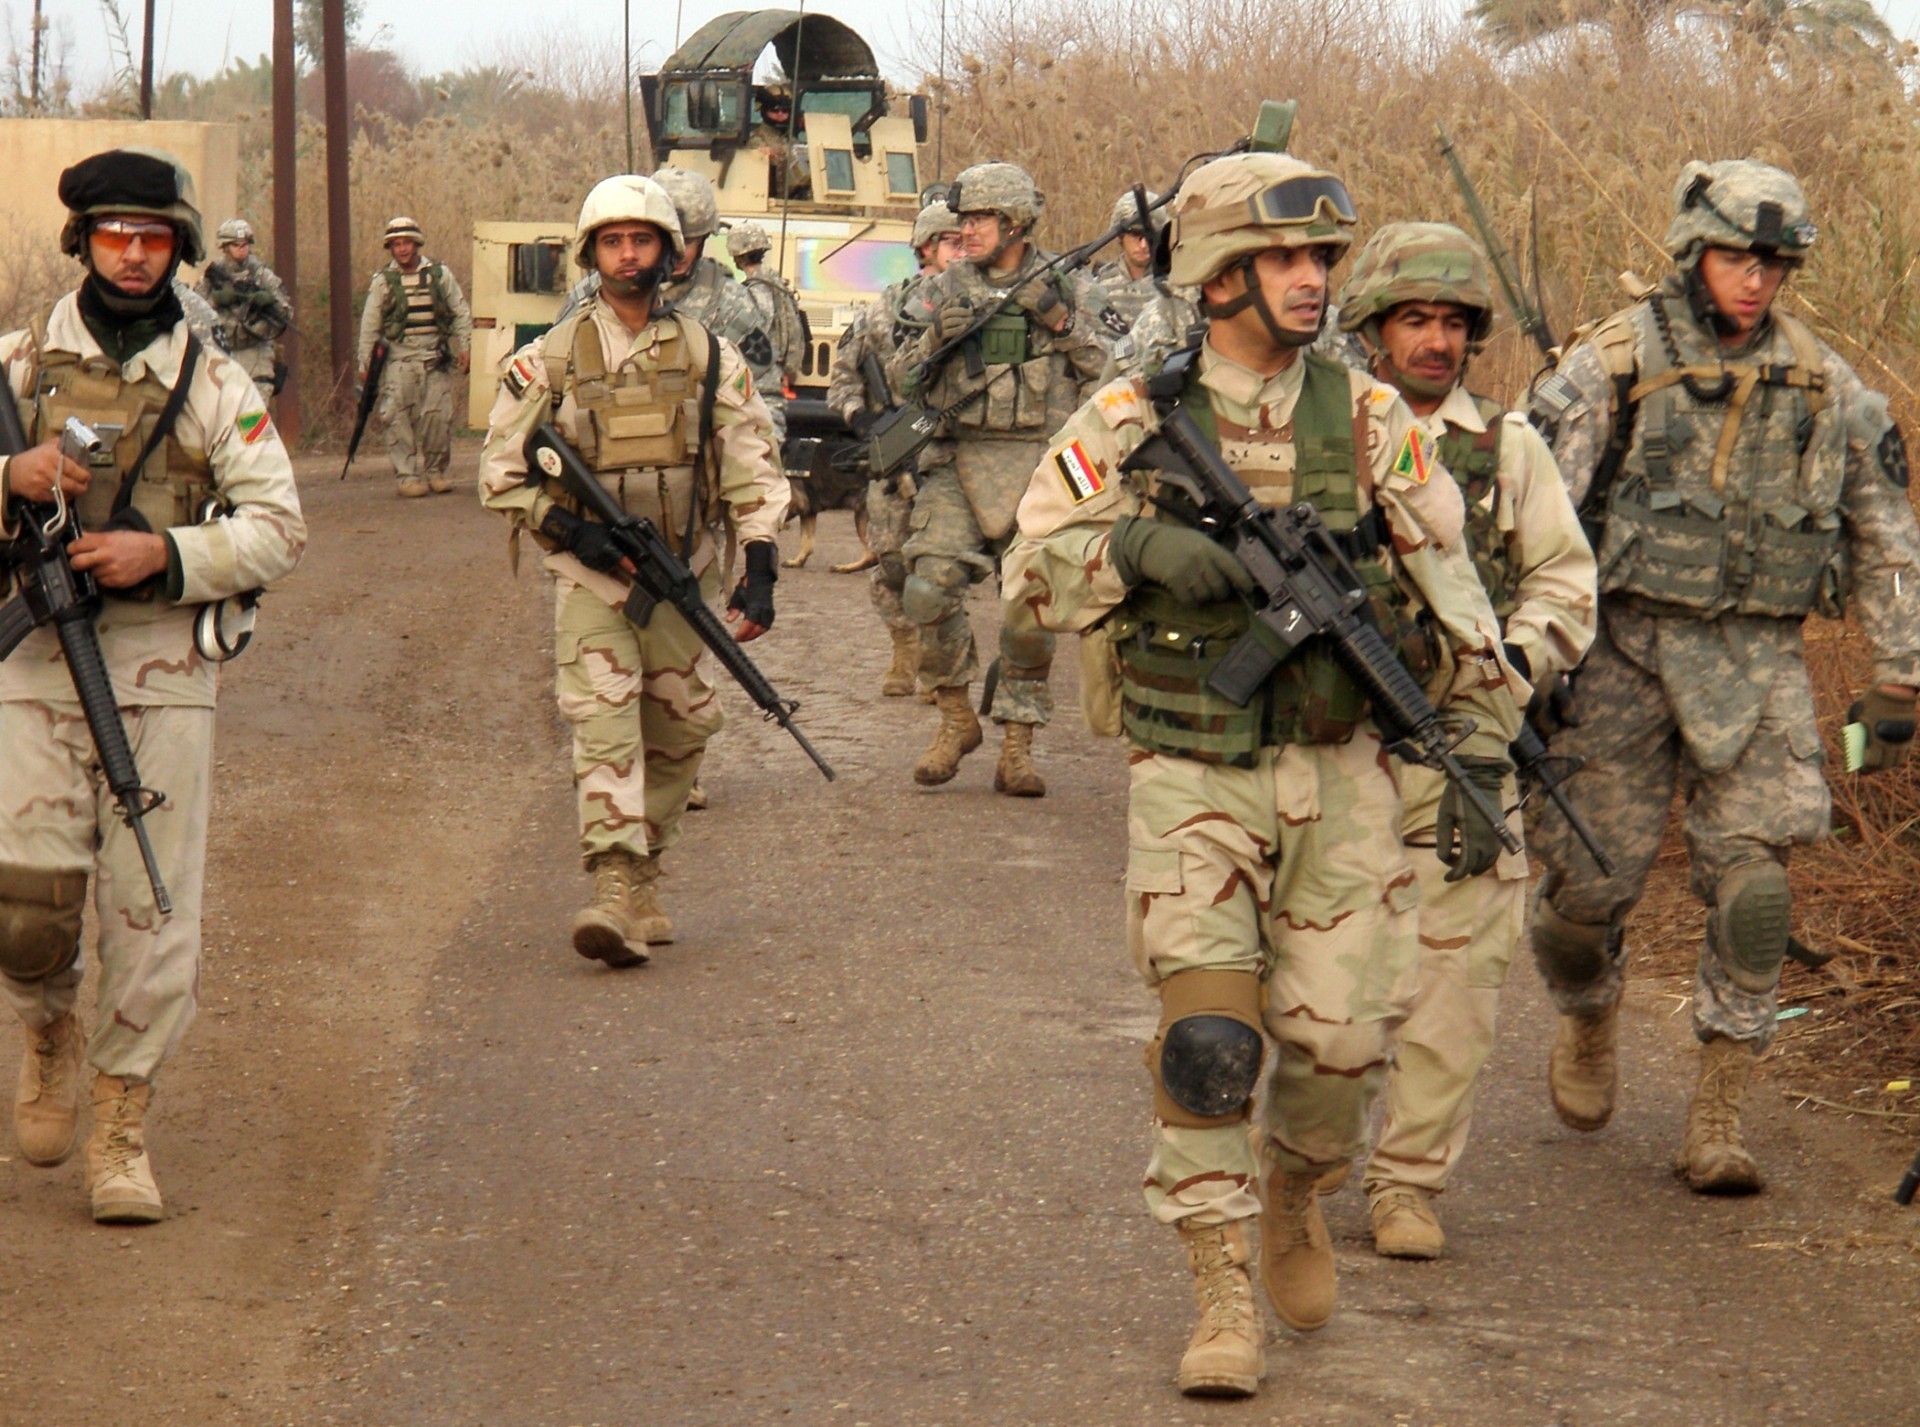 Amerykańscy żołnierze mają w założeniu wspierać siły irackie, nie biorąc bezpośredniego udziału w operacjach bojowych. Fot. Capt. David Franklin, 2nd Sqdn., 1st Cav. Reg., UPAR, USD-C/US Army.